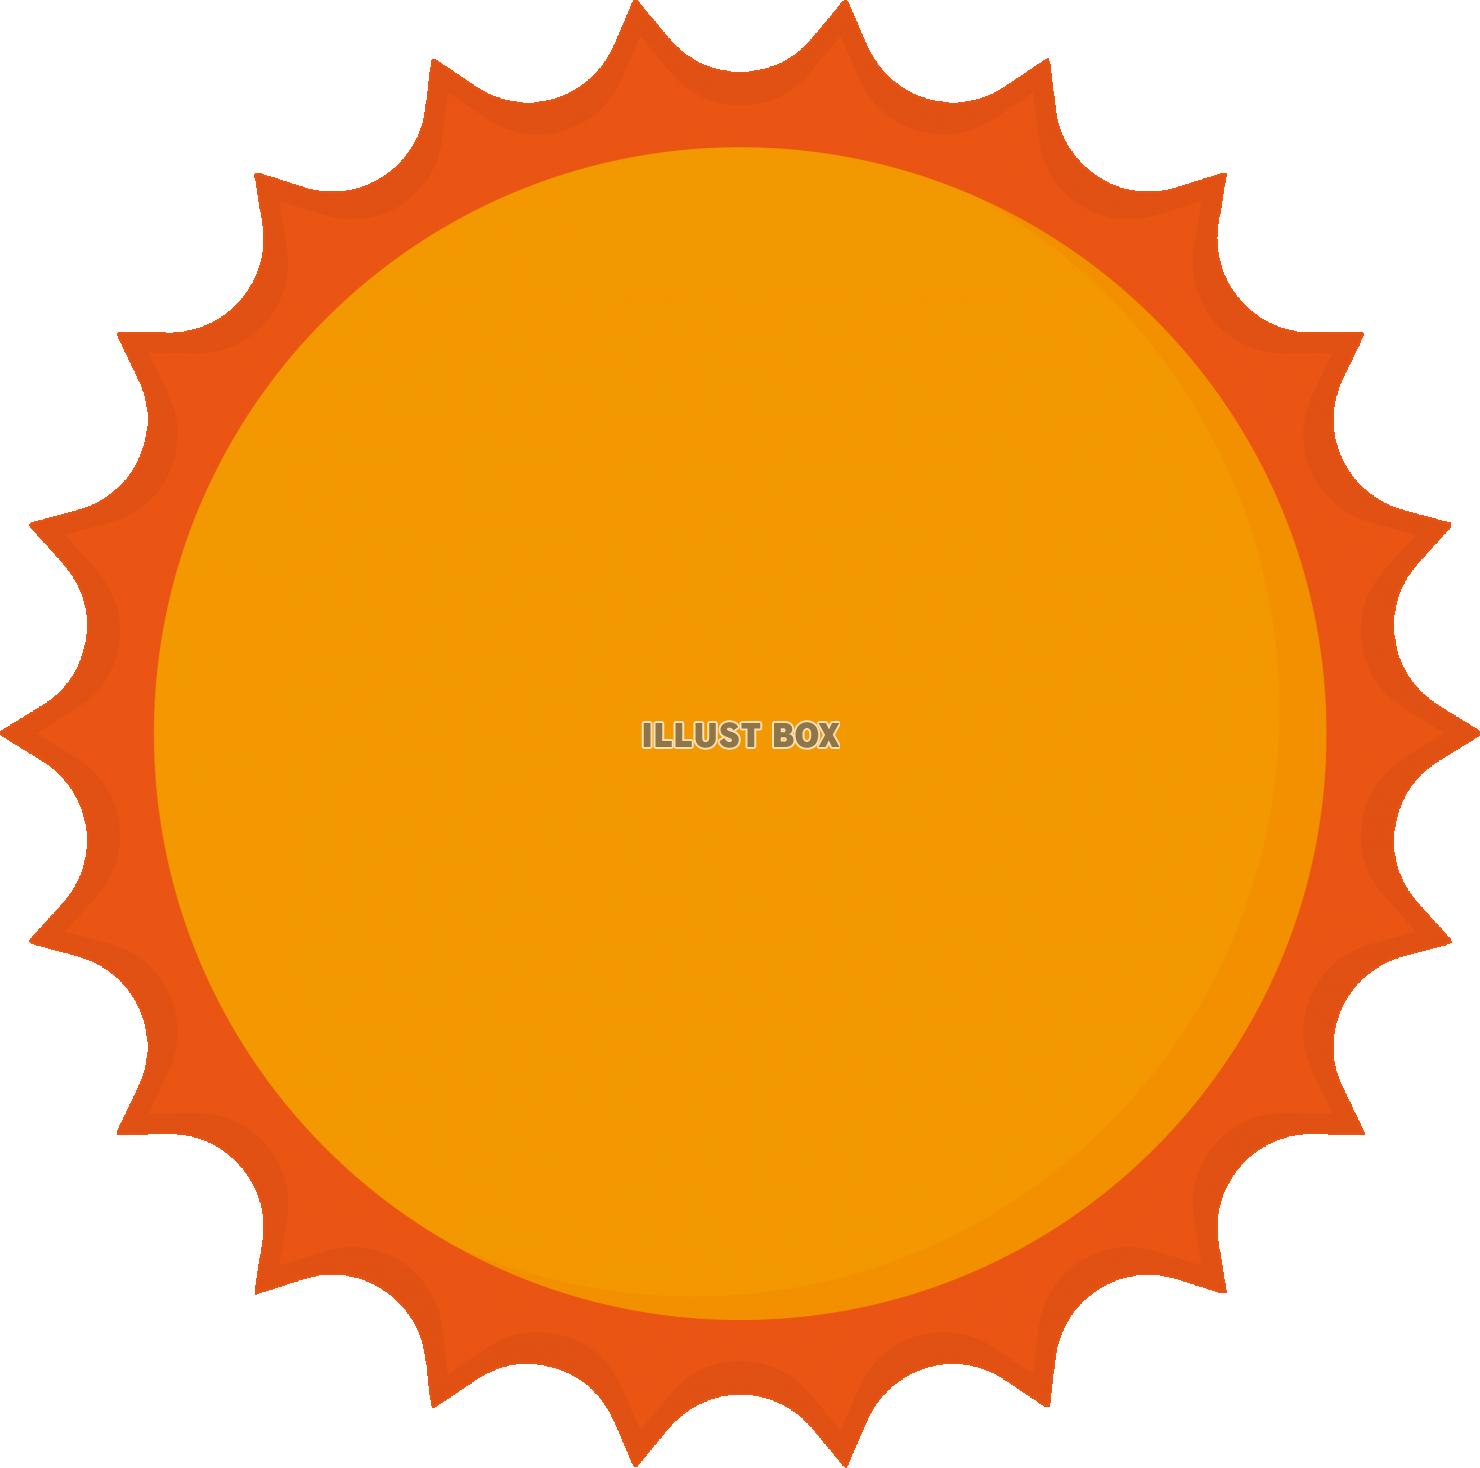 太陽のイメージ